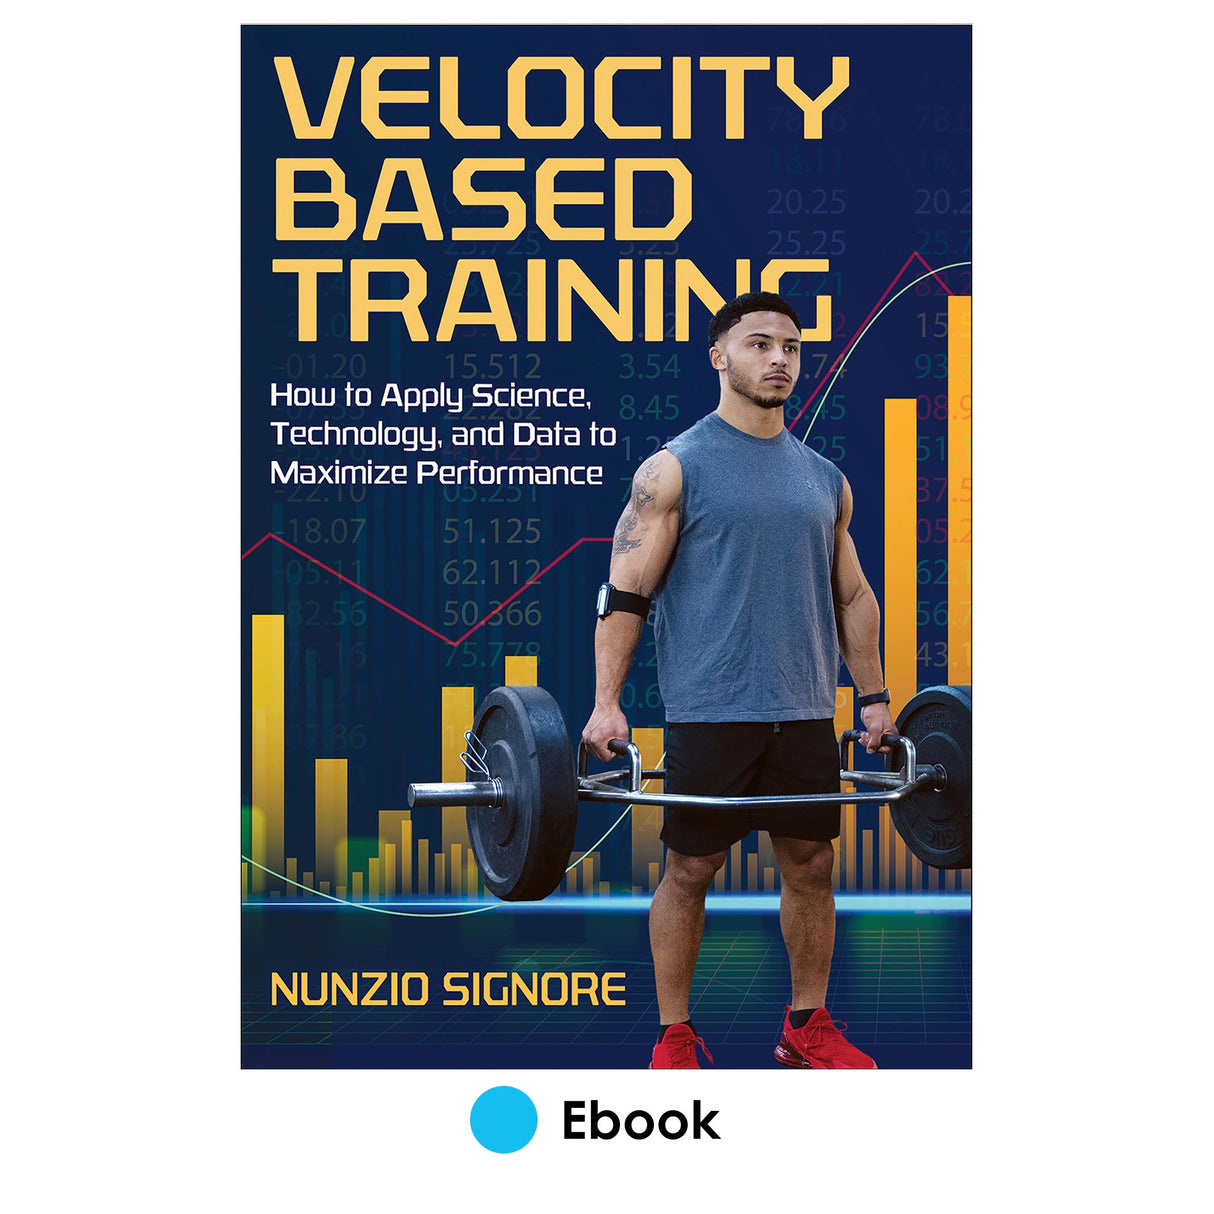 Velocity-Based Training epub